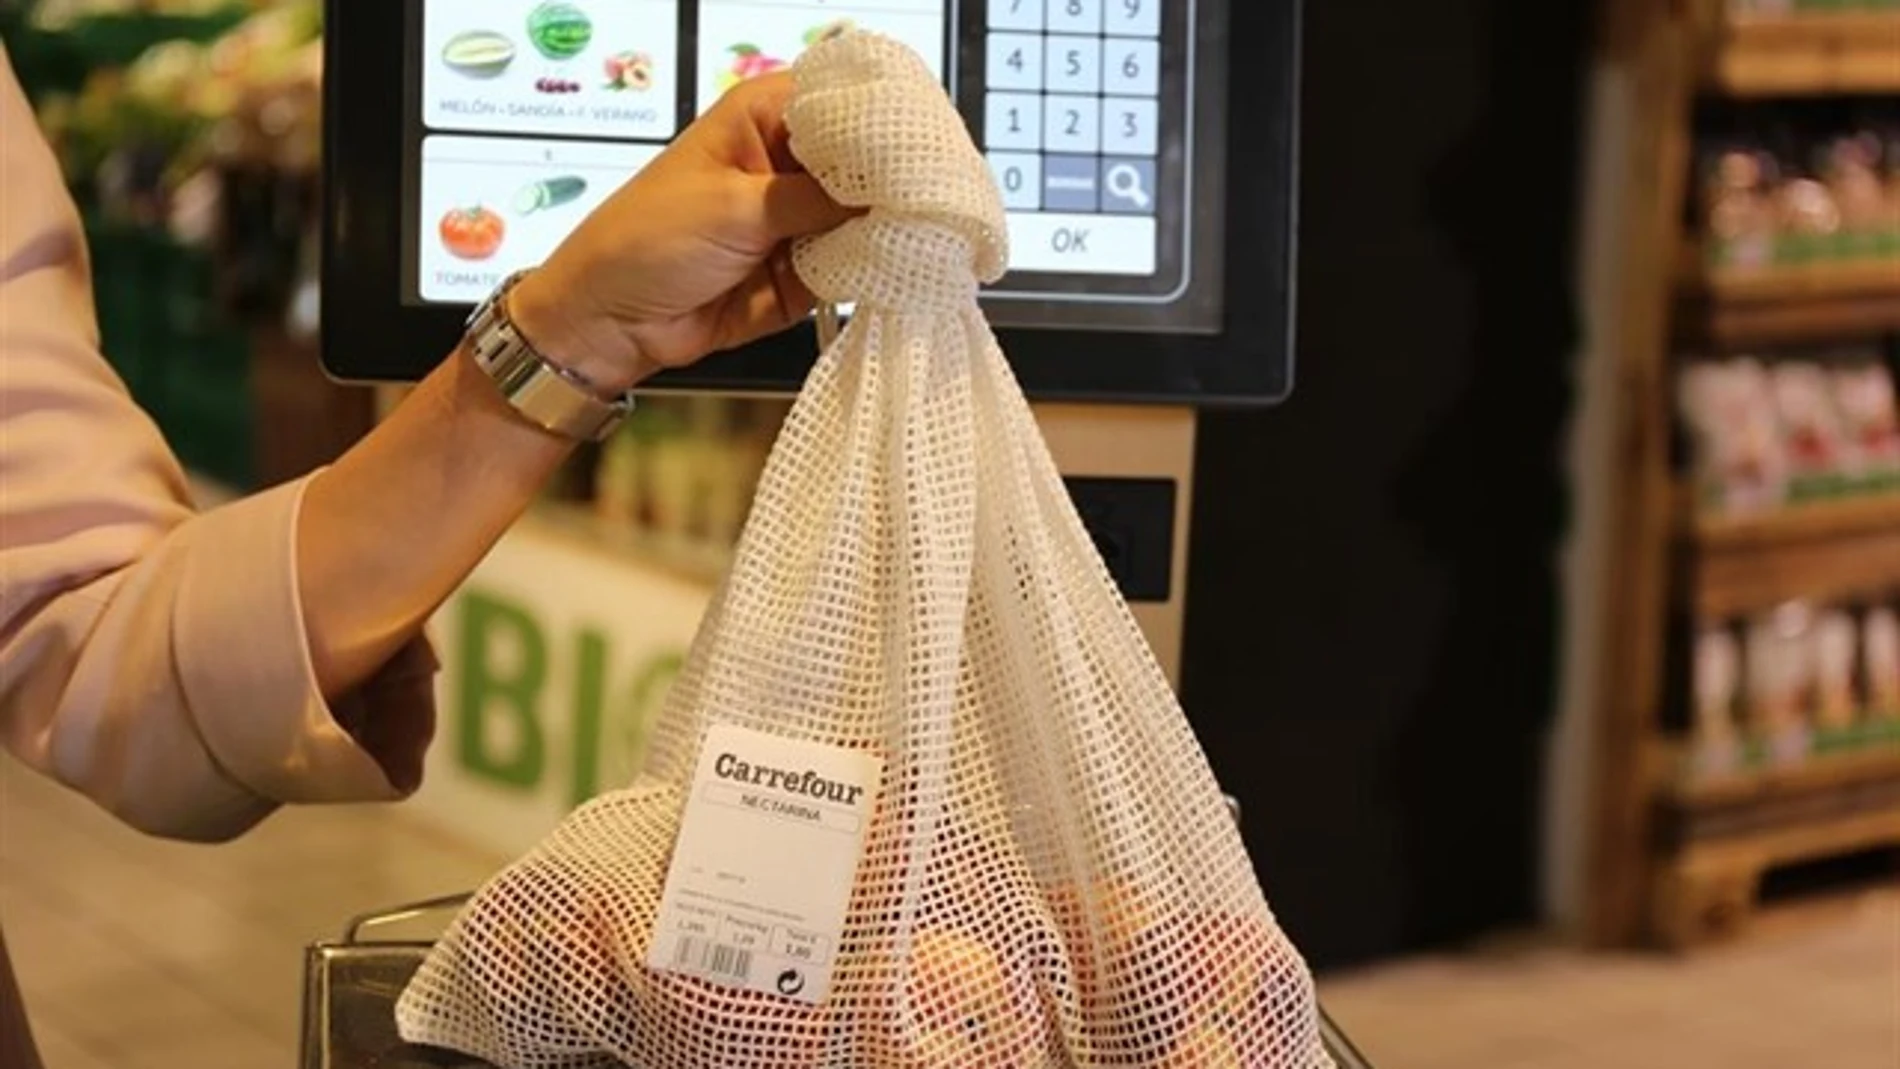 Los usuarios demandaban la sustitución de las bolsas de plástico